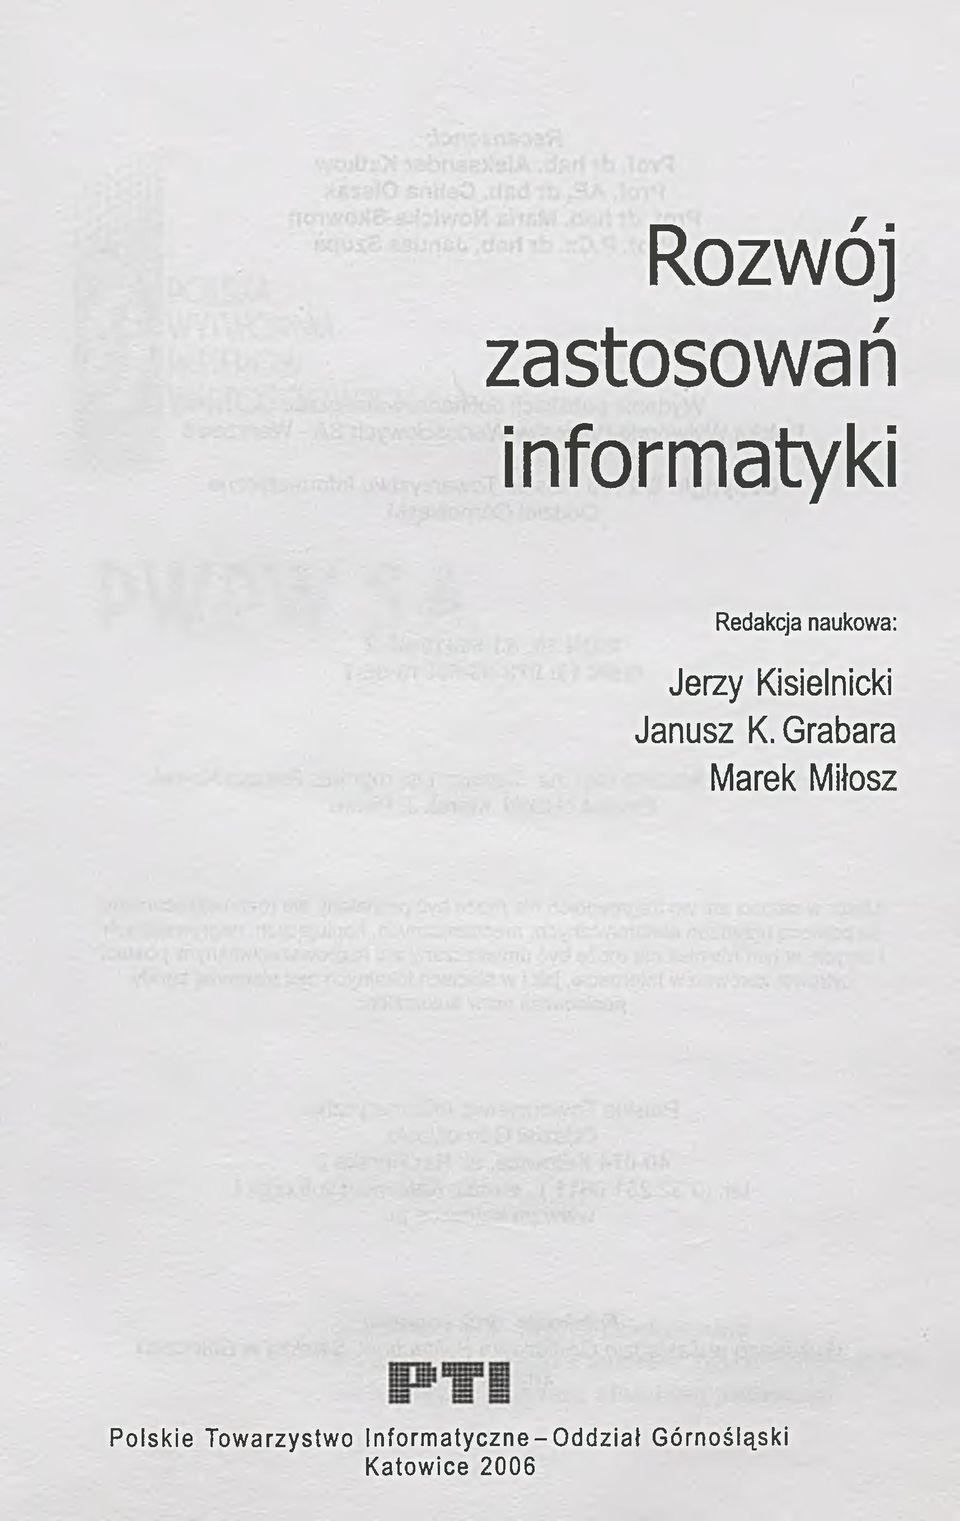 Grabara Marek Miłosz Polskie Towarzystwo